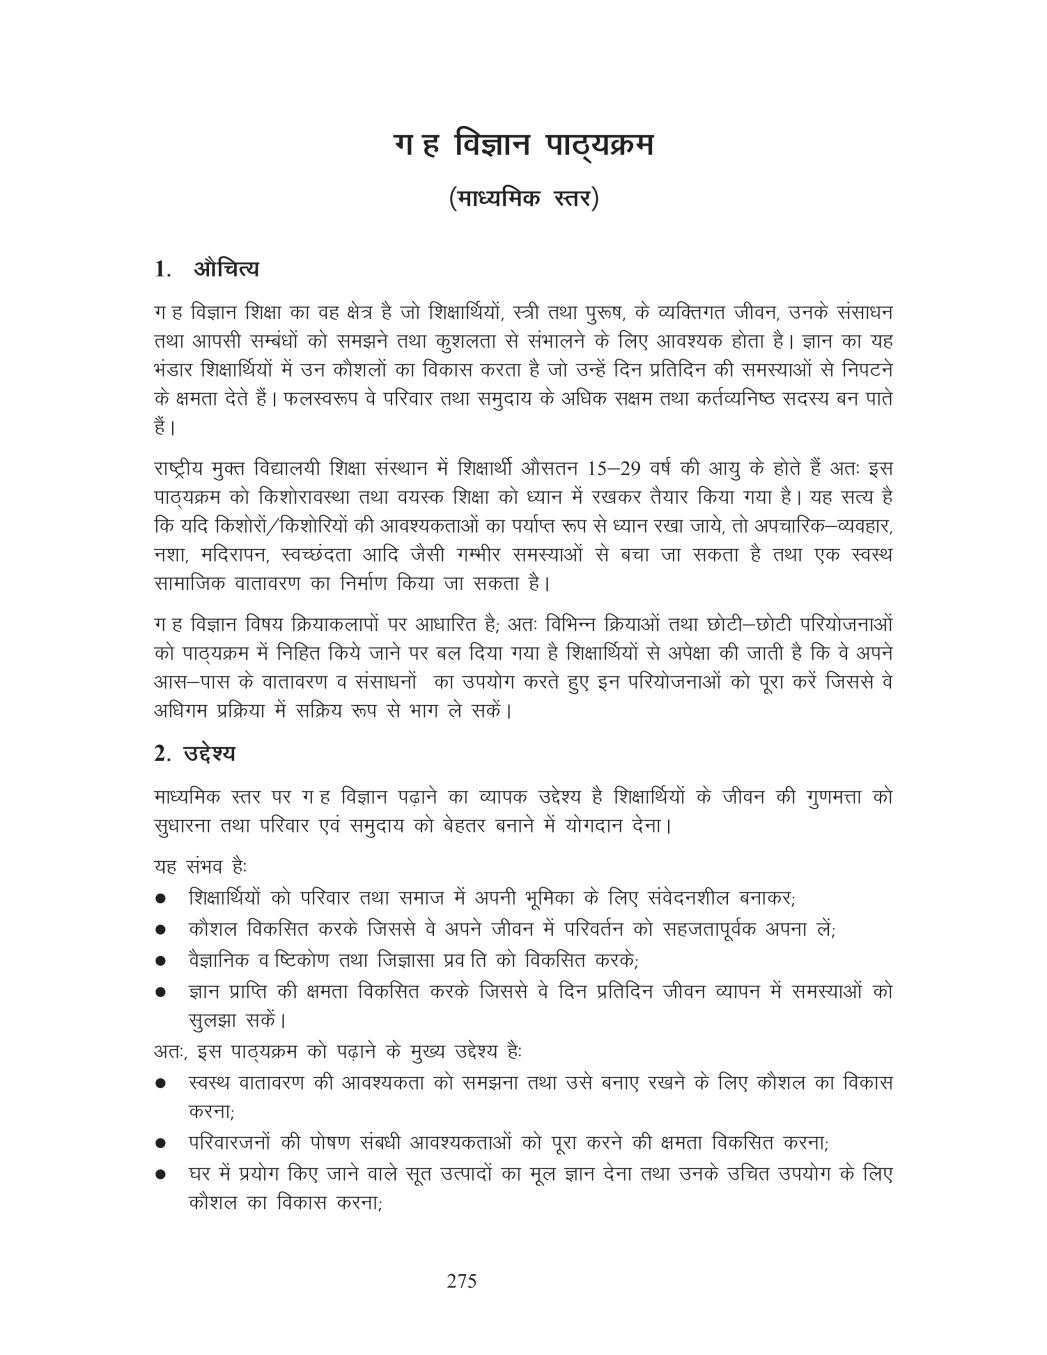 NIOS Class 10 Syllabus - Home Science (Hindi Medium) - Page 1